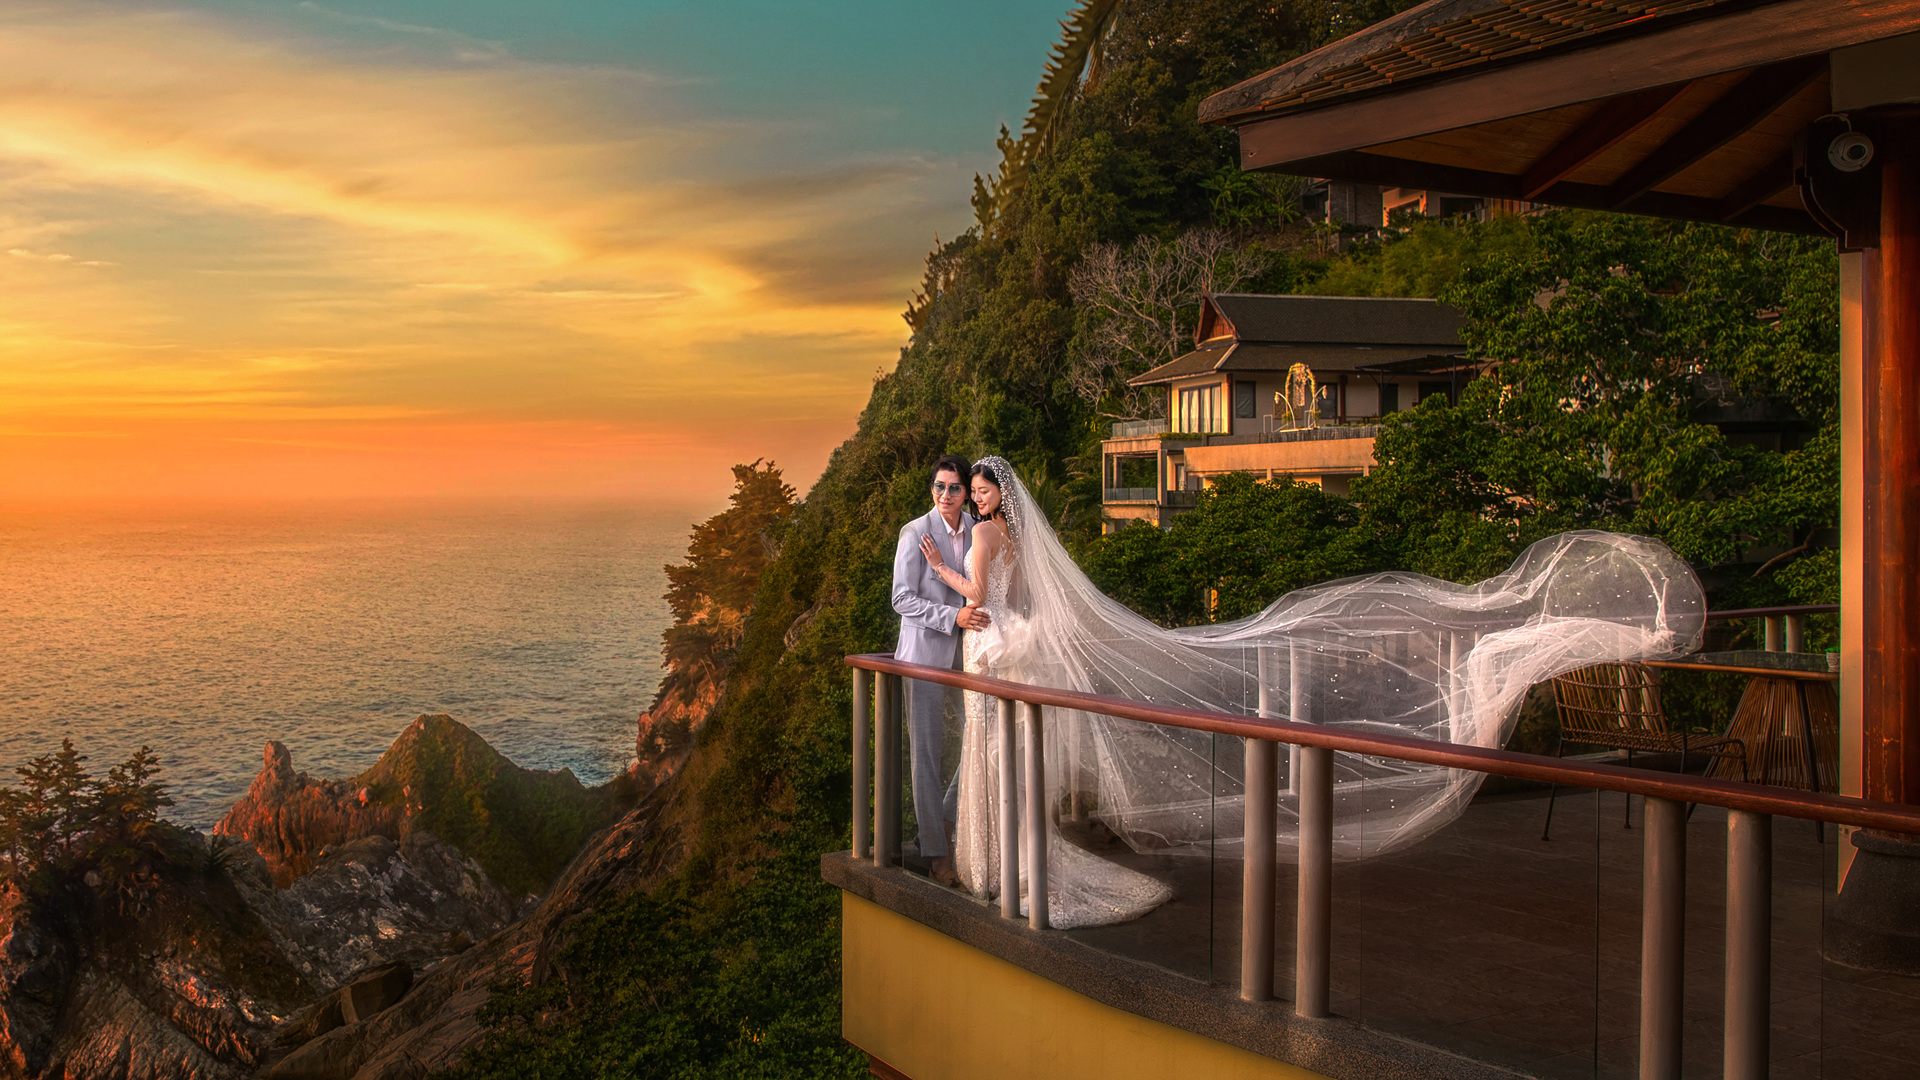 厦门海景婚纱摄影效果怎么样 铂爵旅拍婚纱摄影如何 性价比高